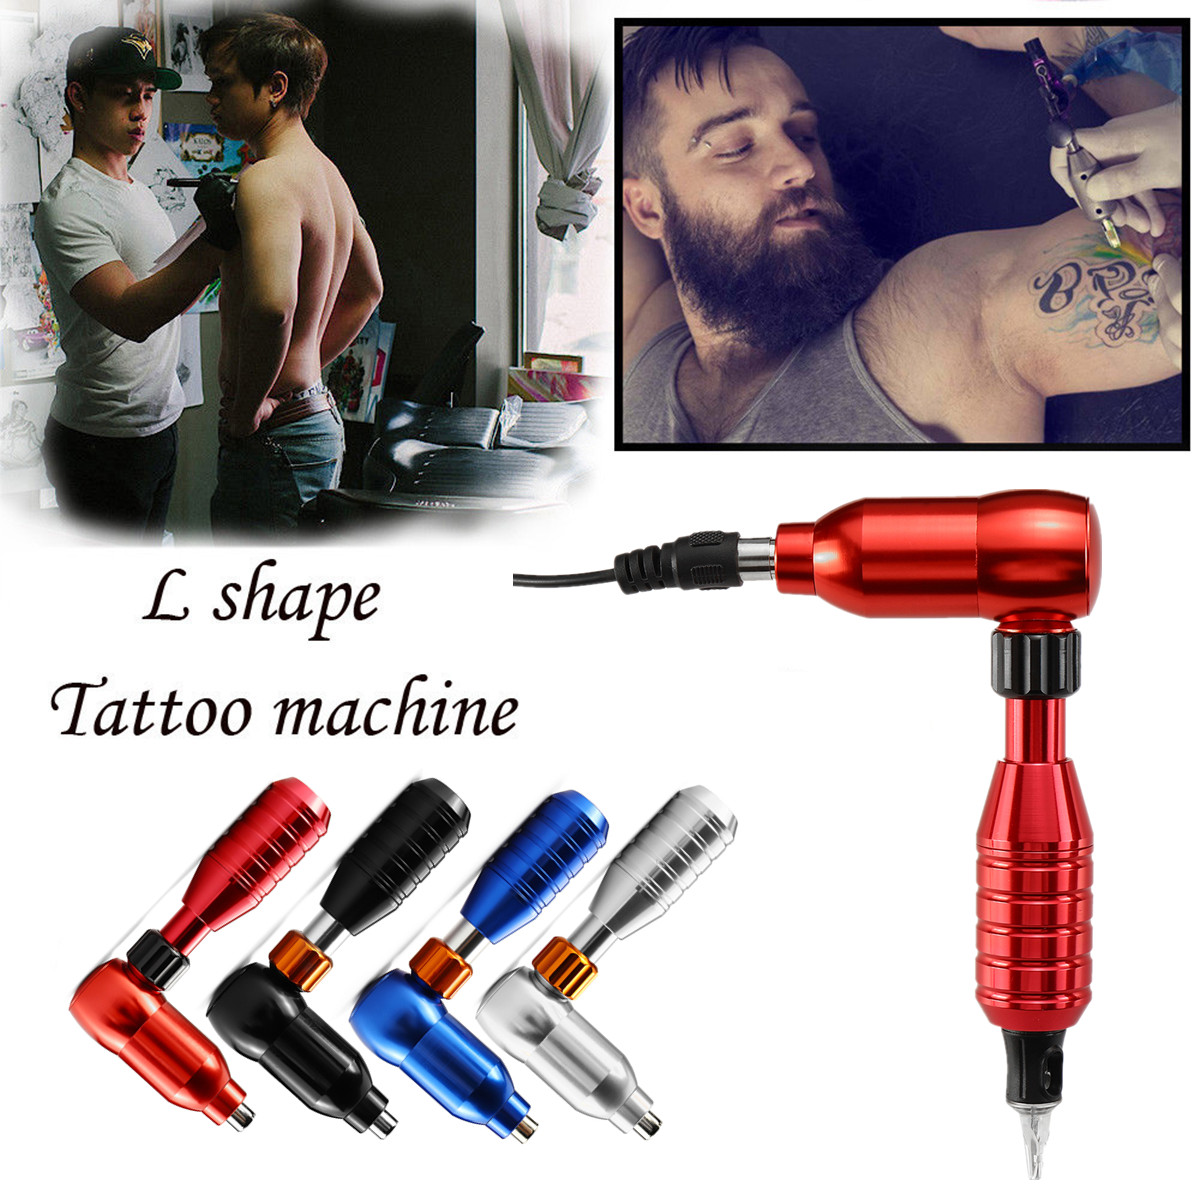 20000-30000rpmmin-Professional-Body-Art-L-Shape-Tattoo-Pen-Rotary-Tattoo-Motor-Machine-Permanent-Mak-1419605